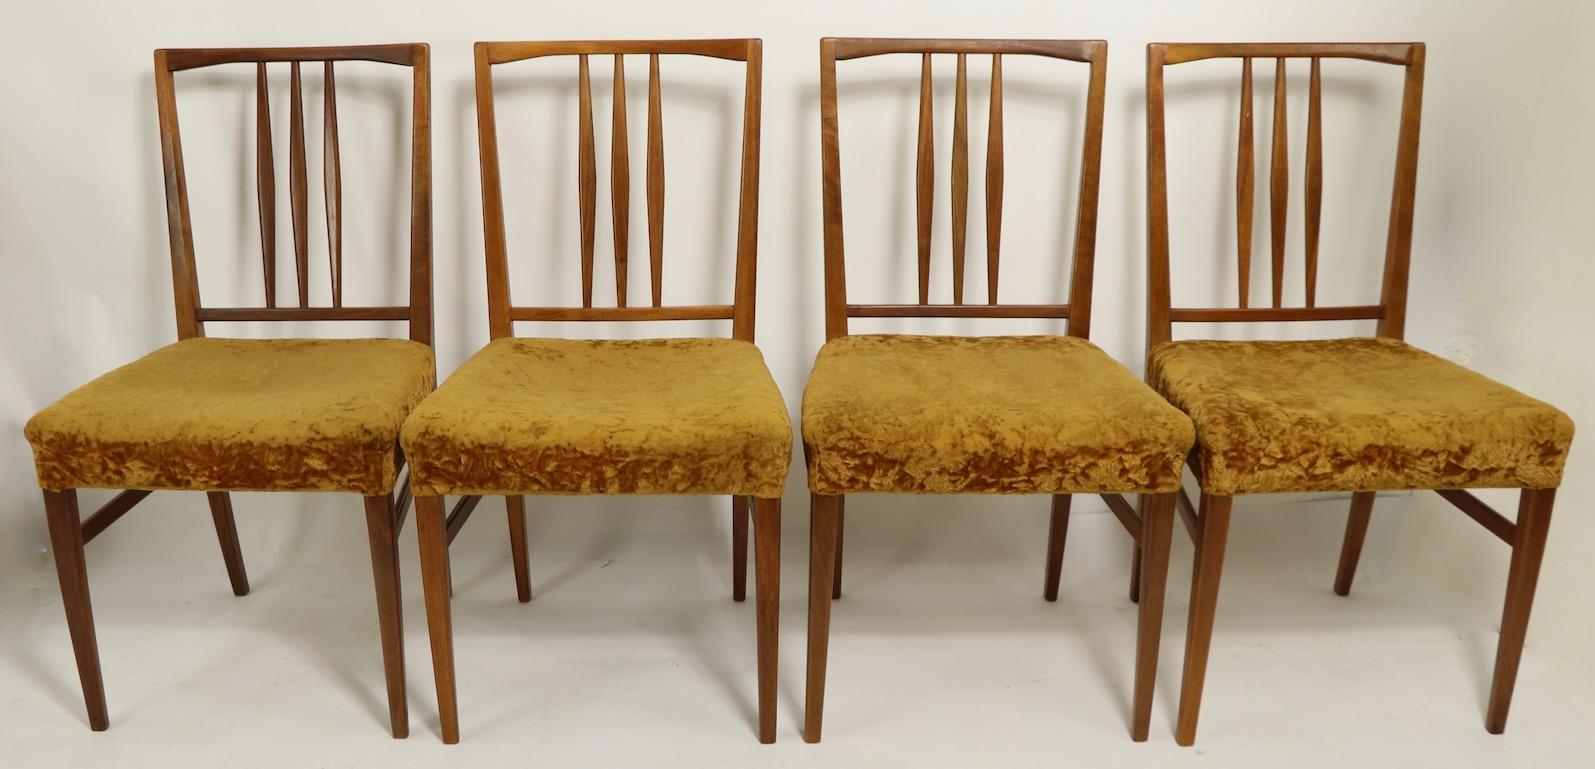 Elegantes und anmutiges Set von 4 Esszimmerstühlen, hergestellt von Gimson and Slater aus England und vertrieben von Heals London. Die Stühle haben langgestreckte, rautenförmige Rückenlehnen und leichte, anmutige Gestelle, die täuschend stark und